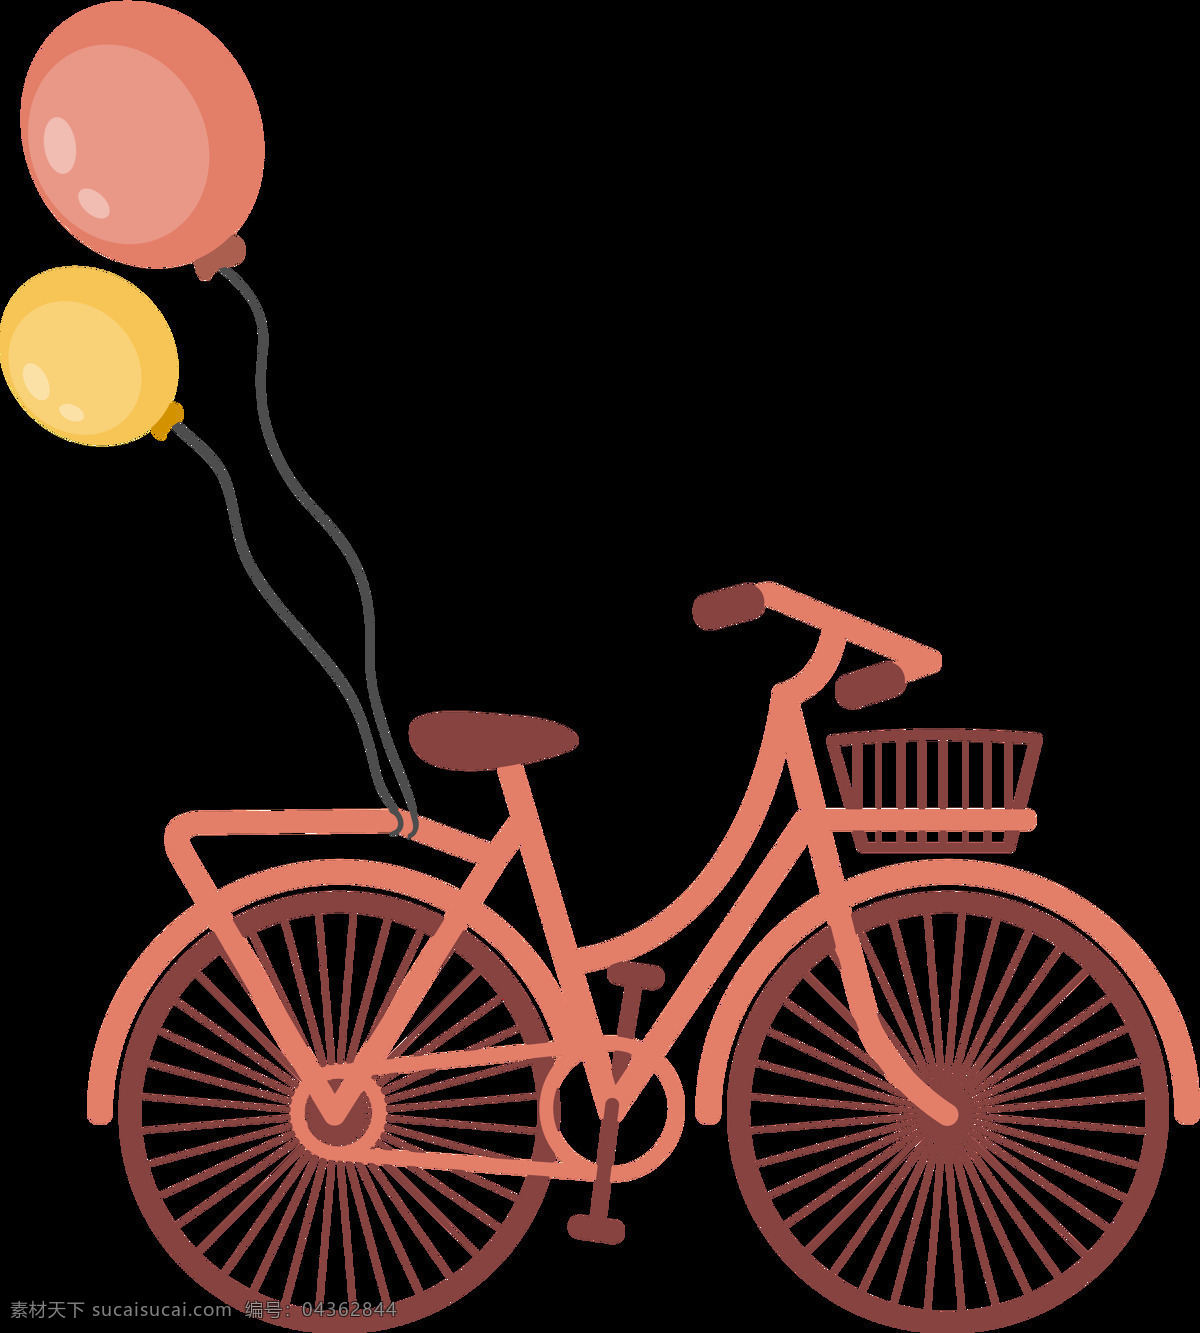 气球 单车 自行车 插画 免 抠 透明 图 层 共享单车 女式单车 男式单车 电动车 绿色低碳 绿色环保 环保电动车 健身单车 摩拜 ofo单车 小蓝单车 双人单车 多人单车